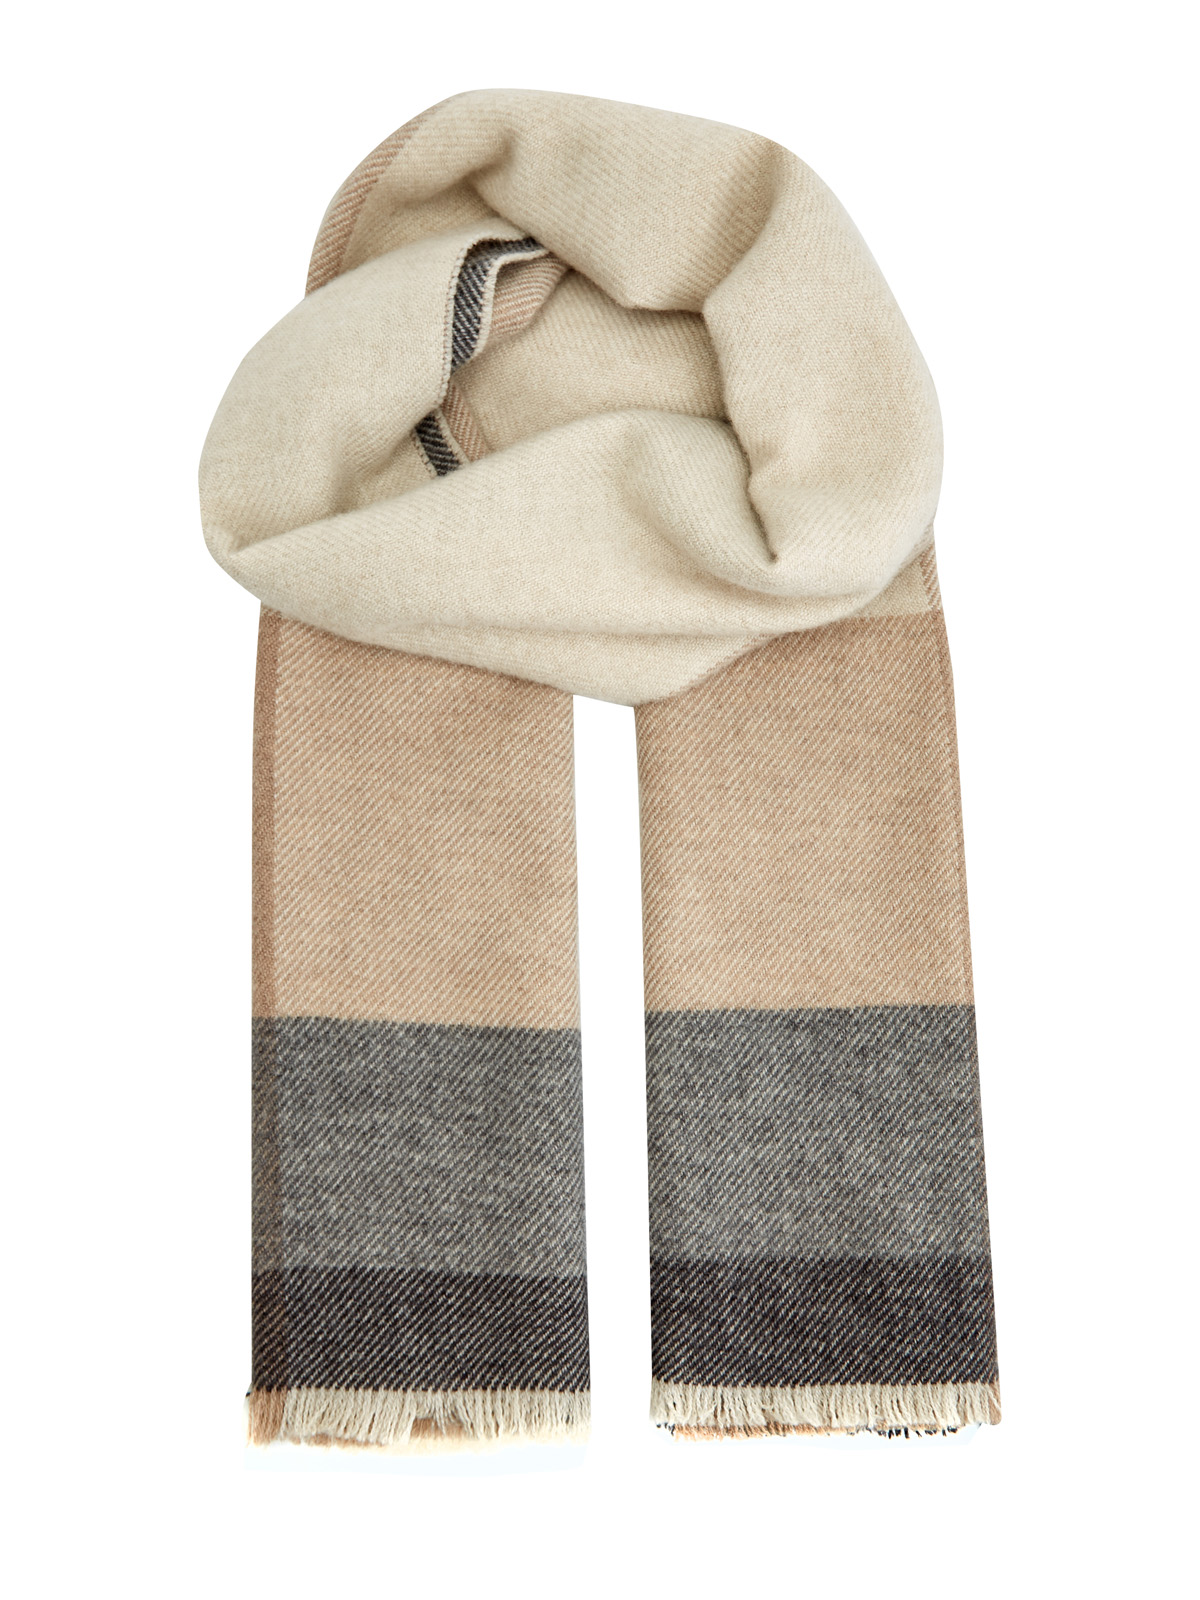 Теплый шарф из шерсти и кашемира в клетку BRUNELLO CUCINELLI, цвет бежевый, размер M;L